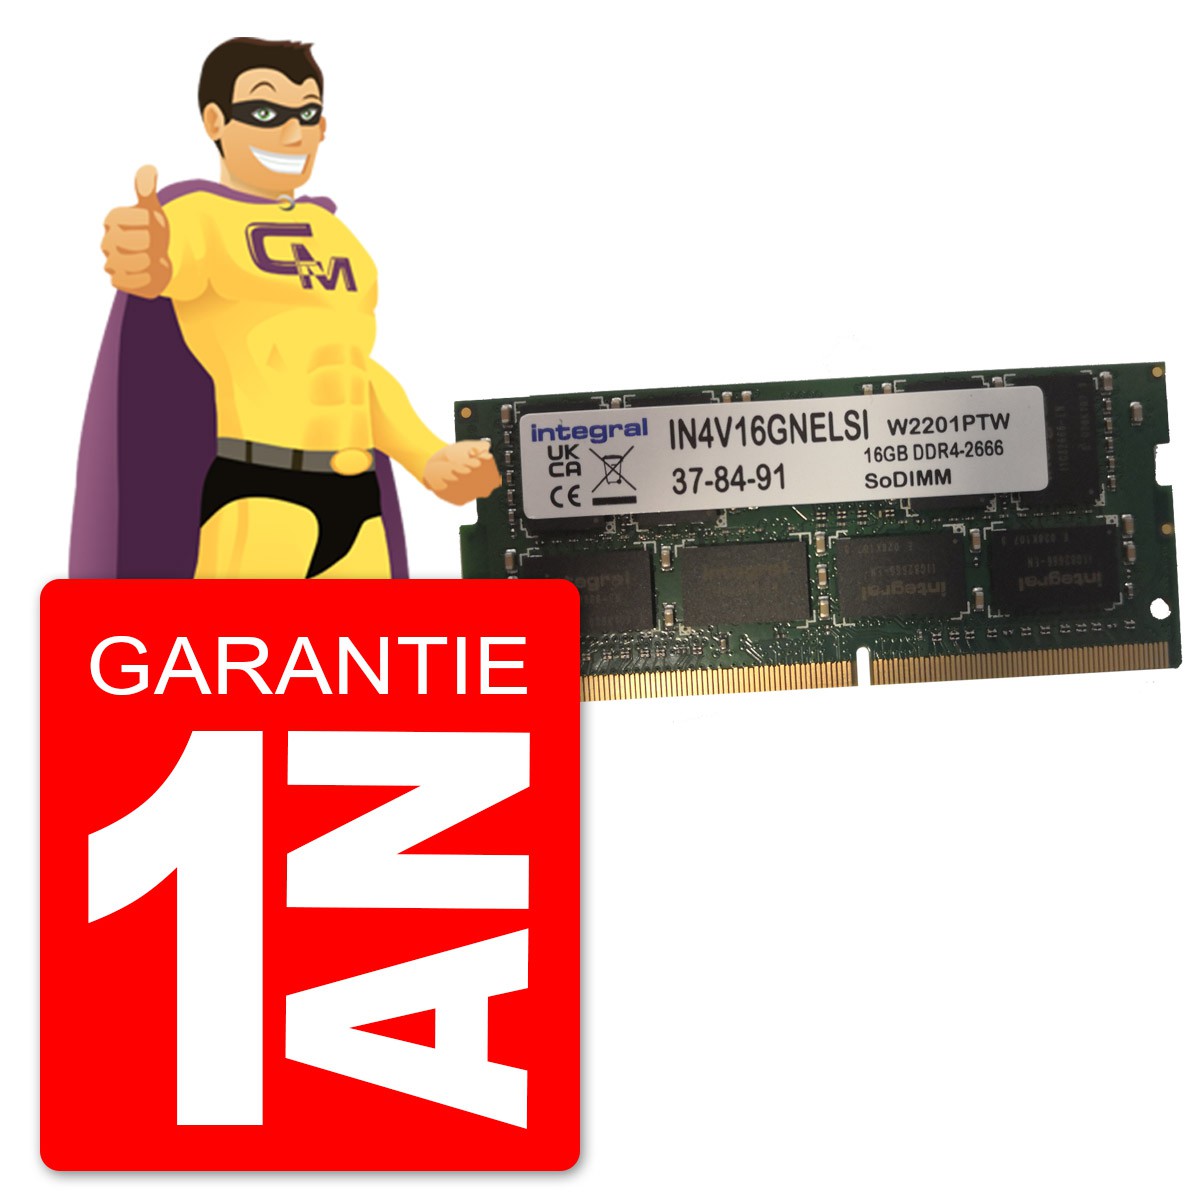 Mémoire Ram Pc Portable 16 Go DDR4